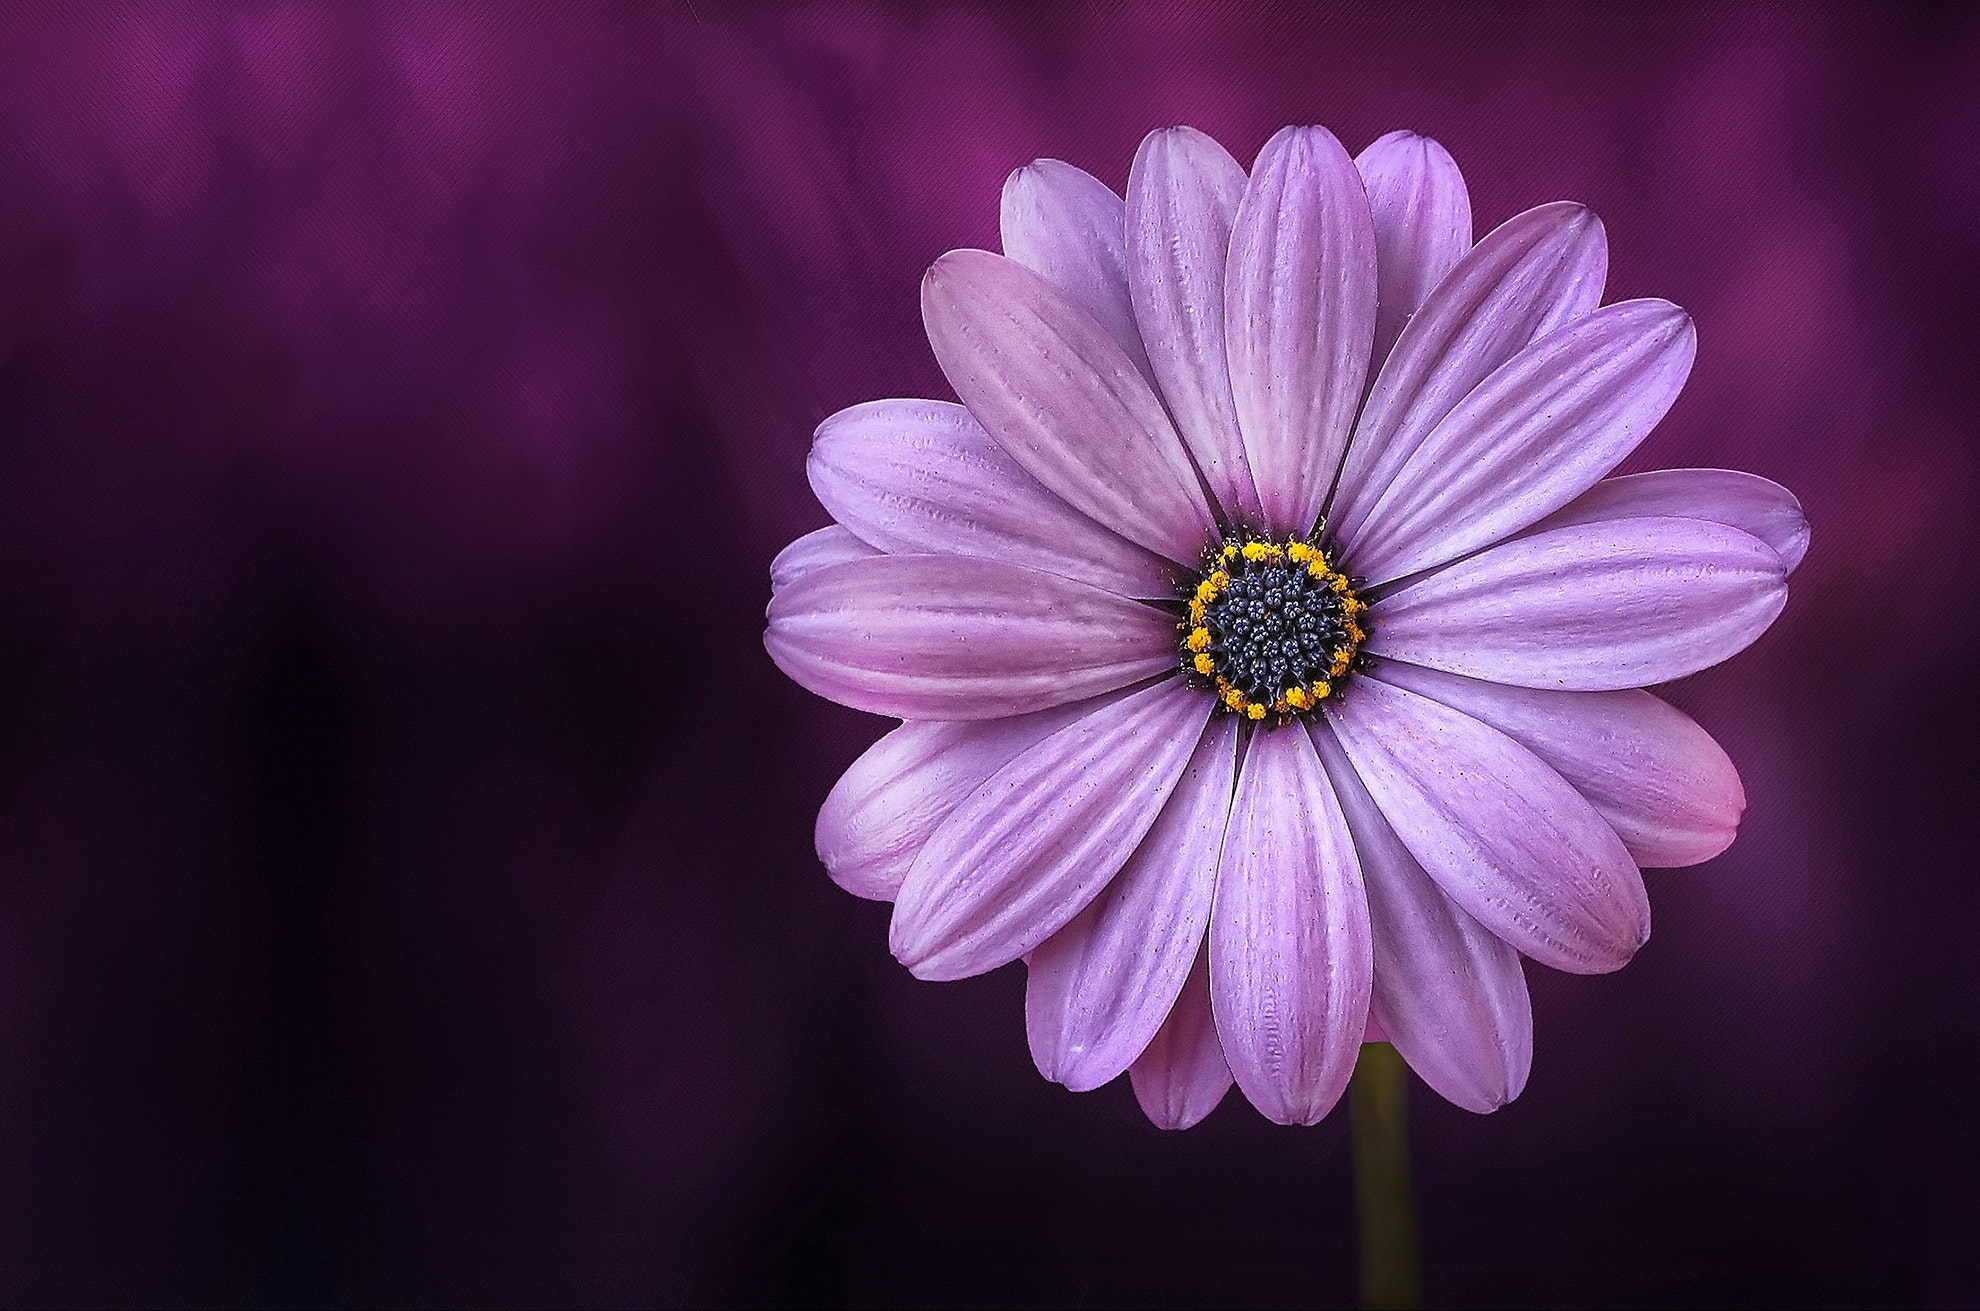 Best Free Purple Flower & Image · 100% Royalty Free HD Downloads